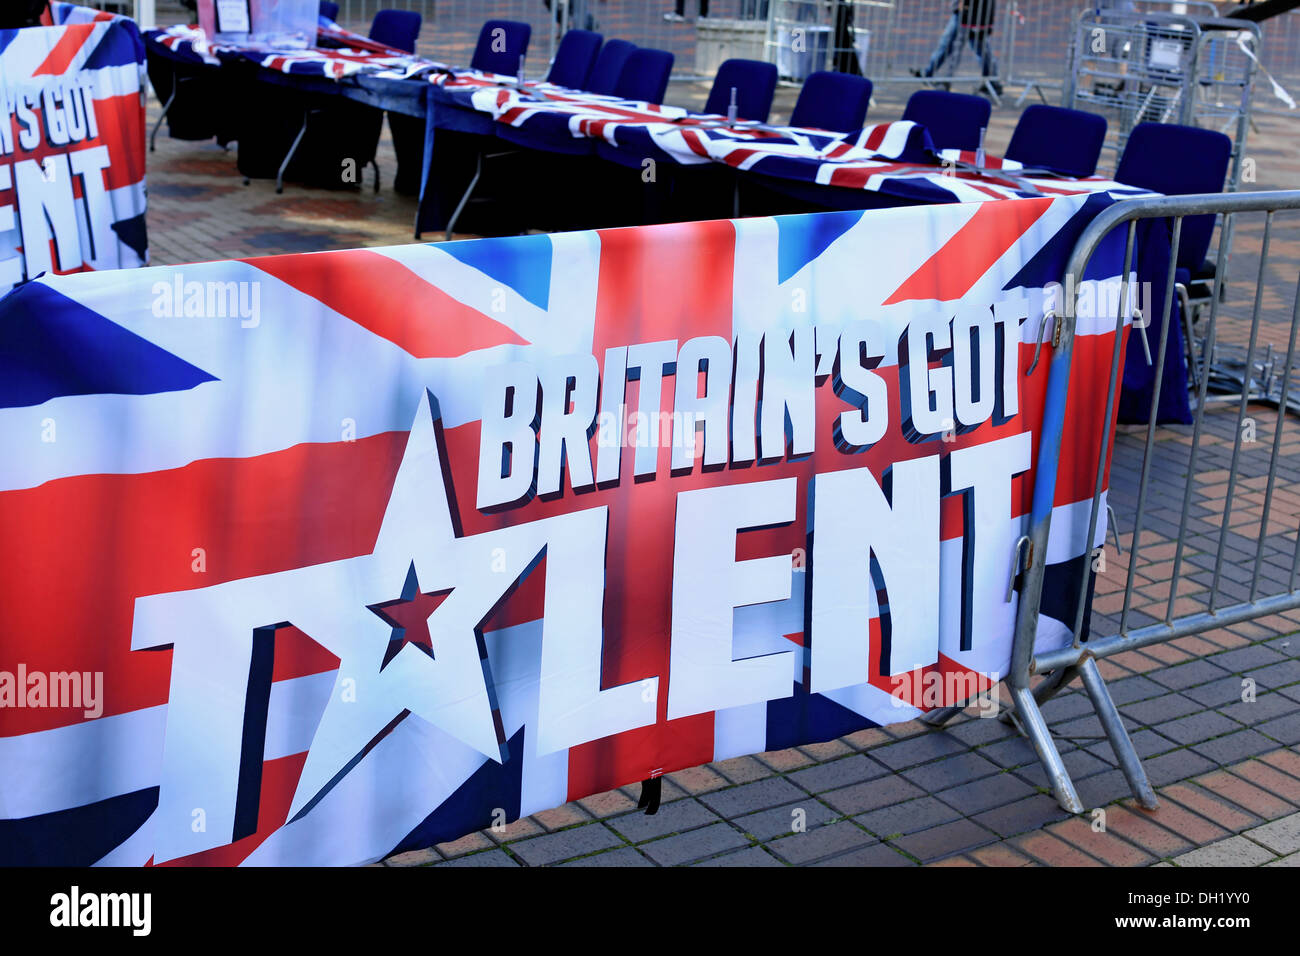 Britain's Got Talent banner et les juges présidents prêt pour les artistes de talent à effectuer à des auditions pour l'émission de télévision Banque D'Images